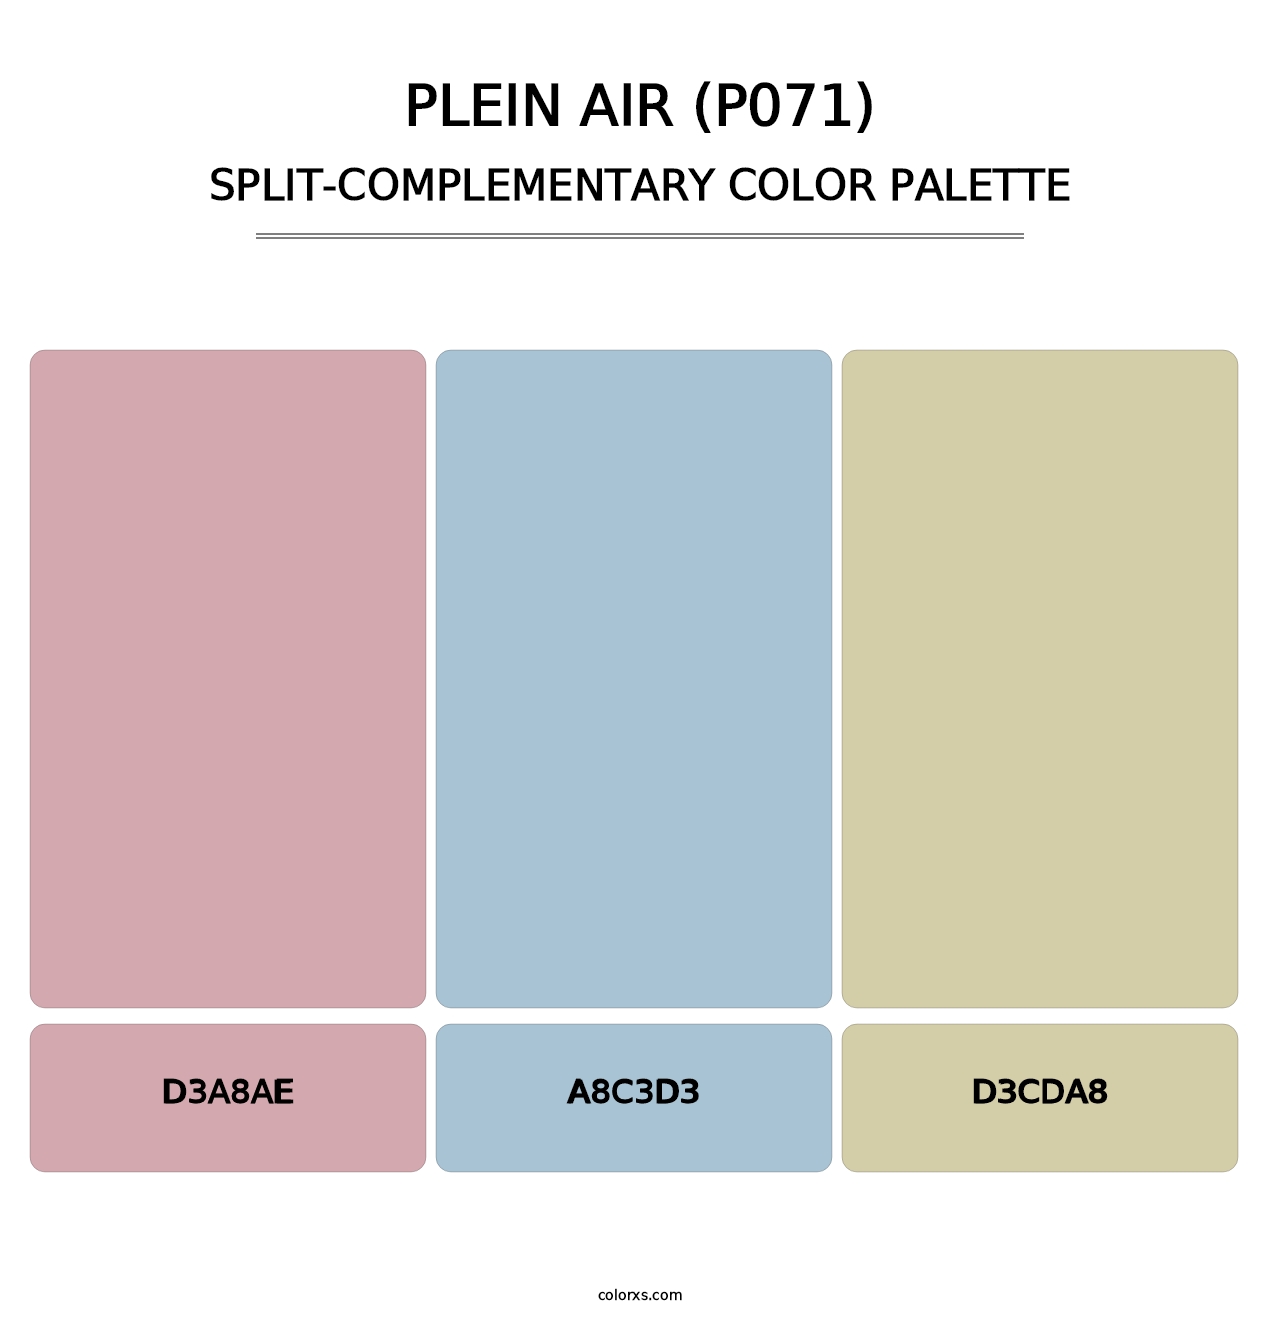 Plein Air (P071) - Split-Complementary Color Palette